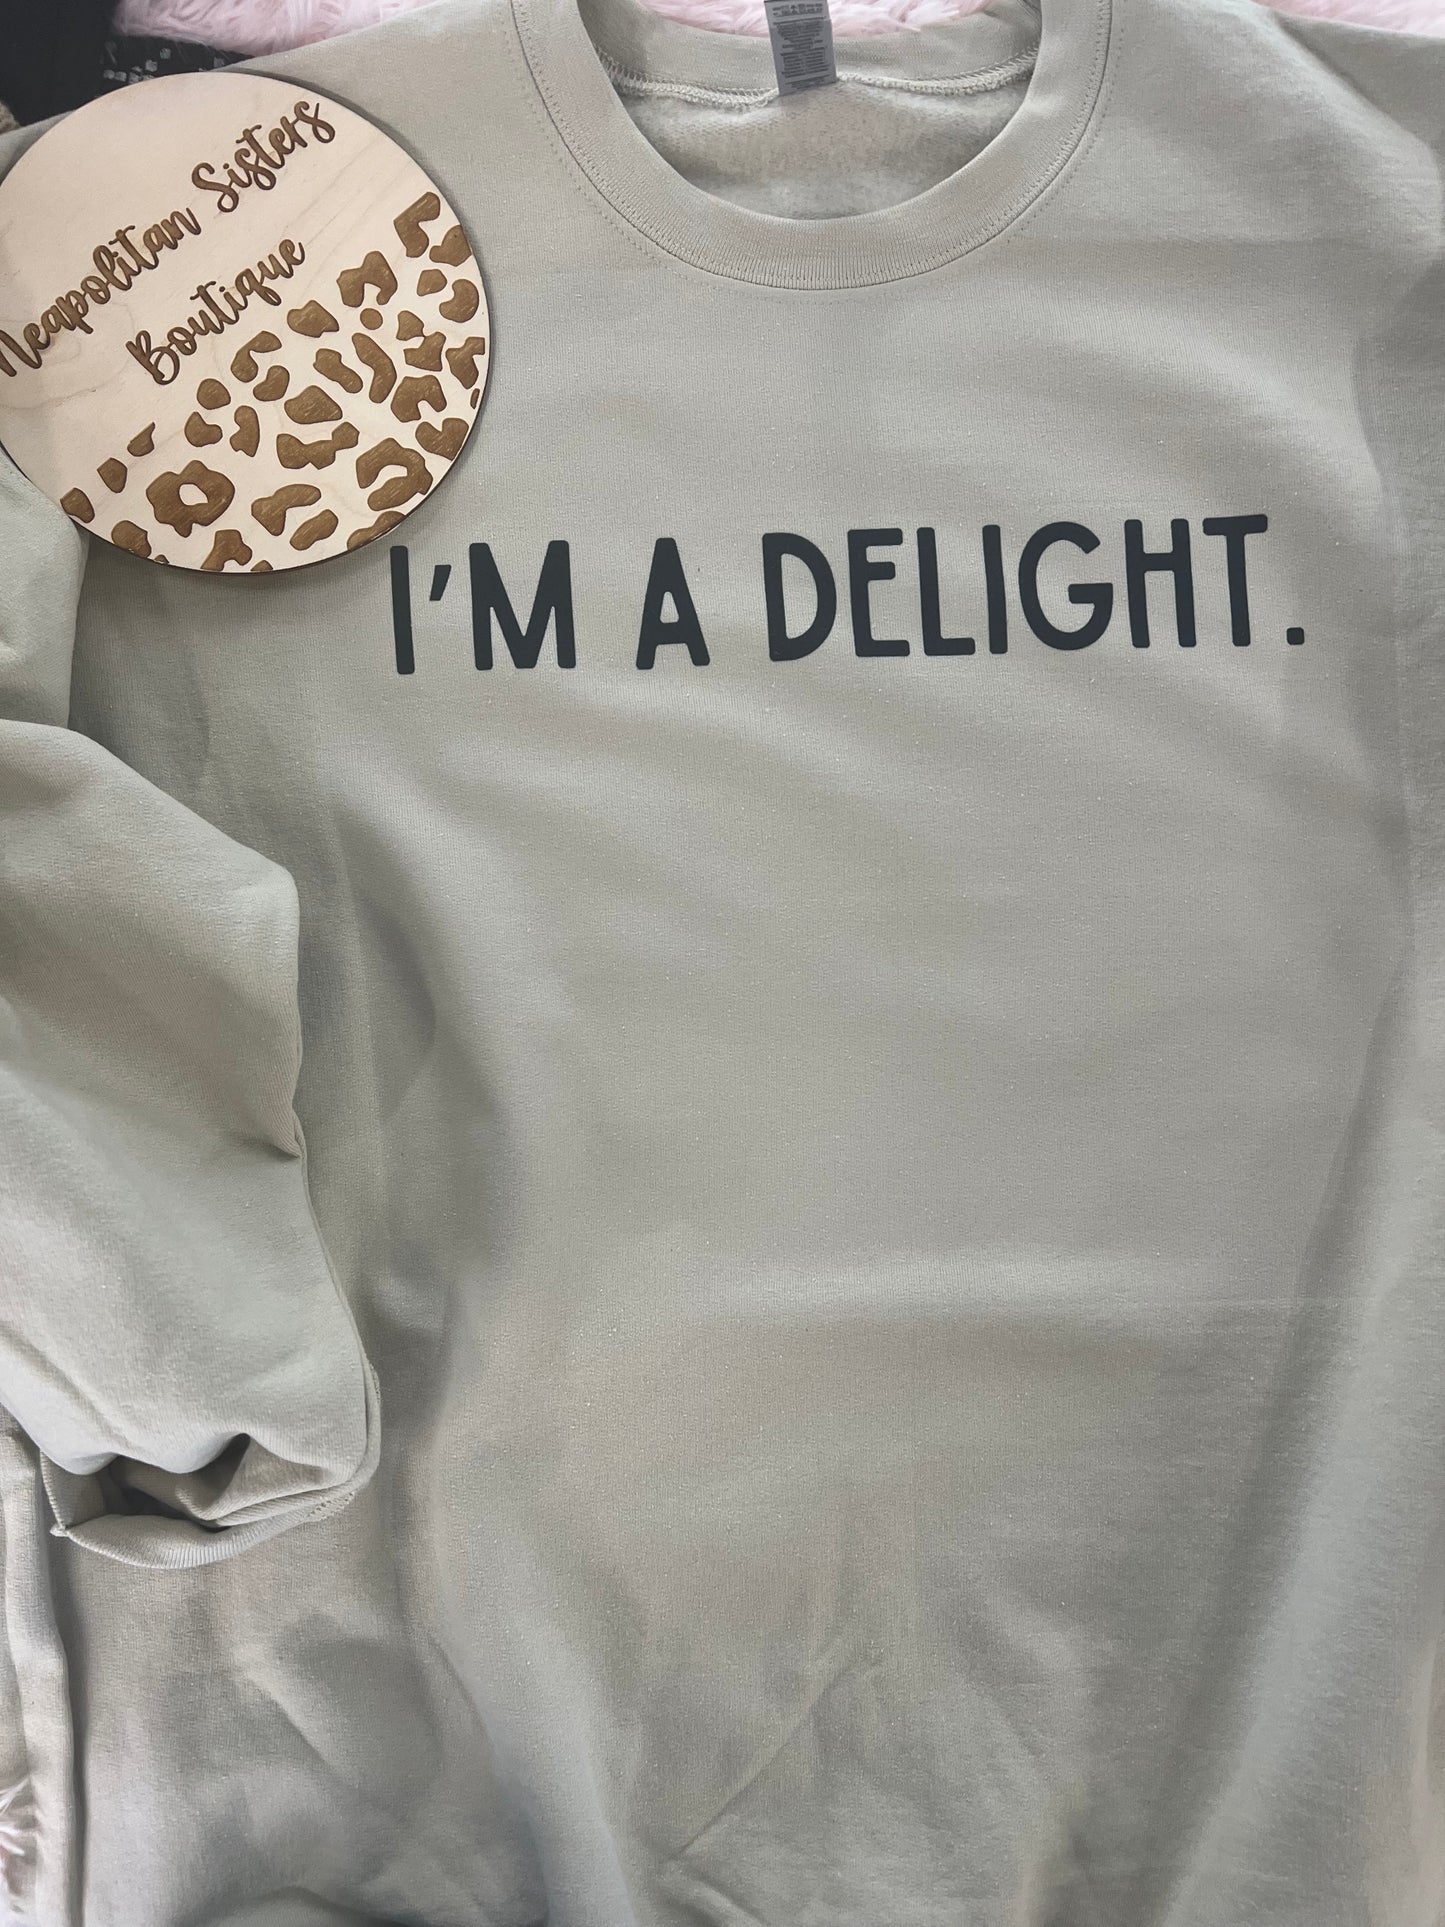 I’m a delight crewneck